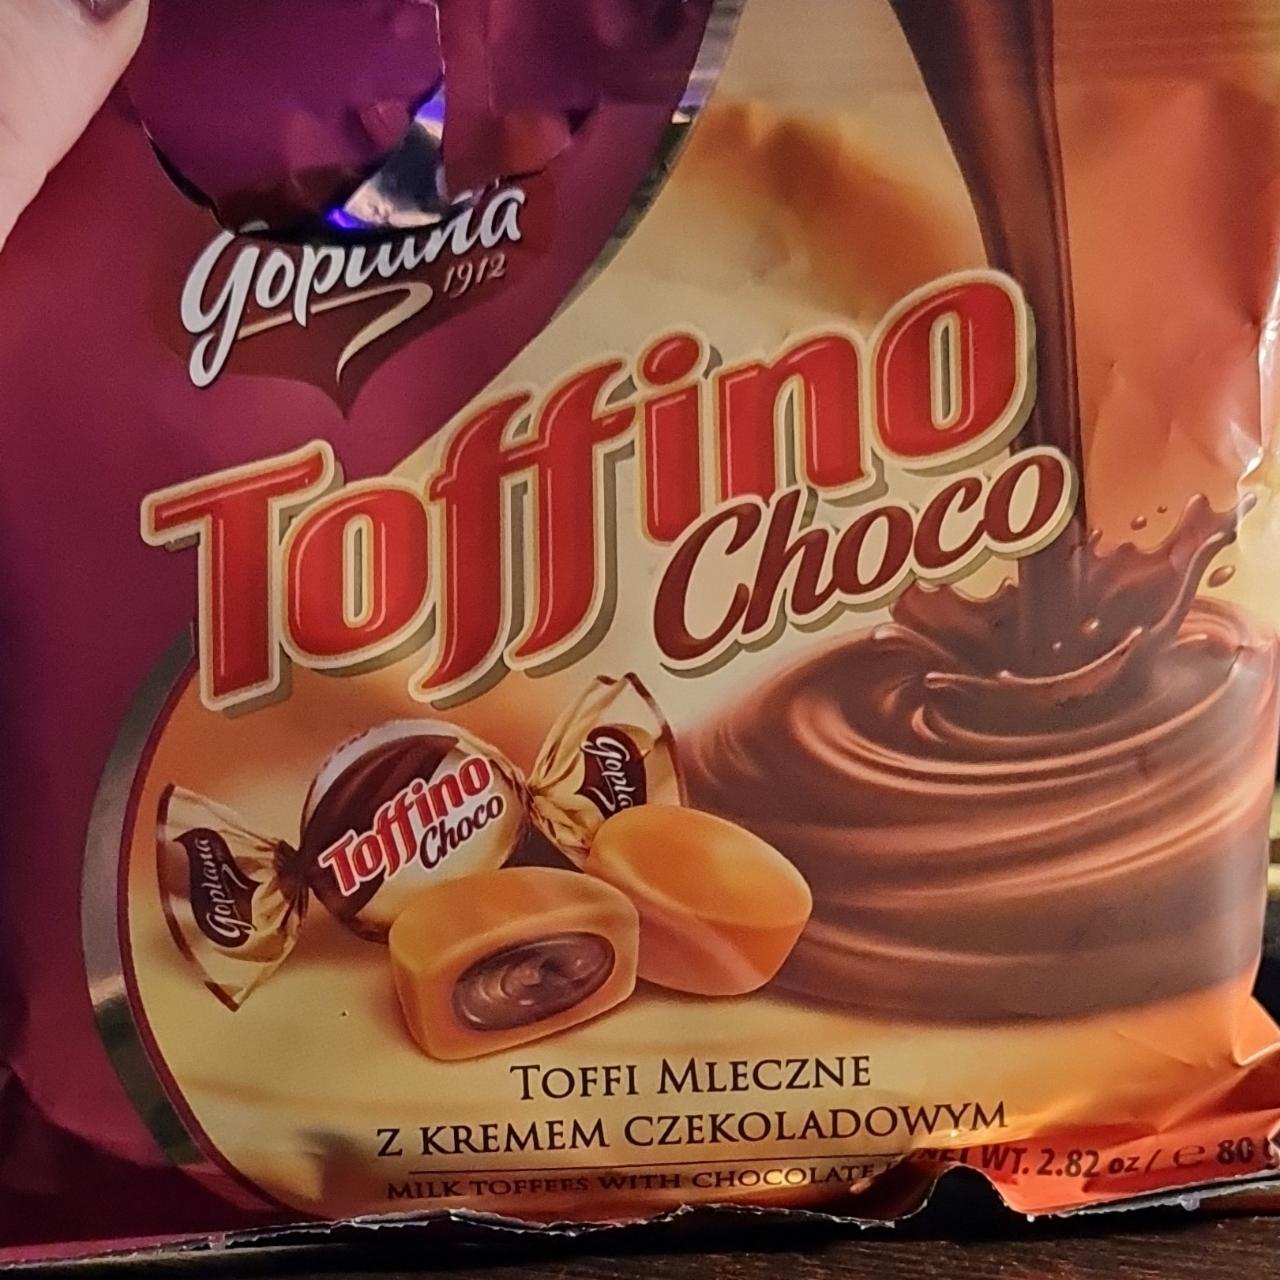 Zdjęcia - Goplana Toffino Choco Toffi mleczne z kremem czekoladowym 80 g